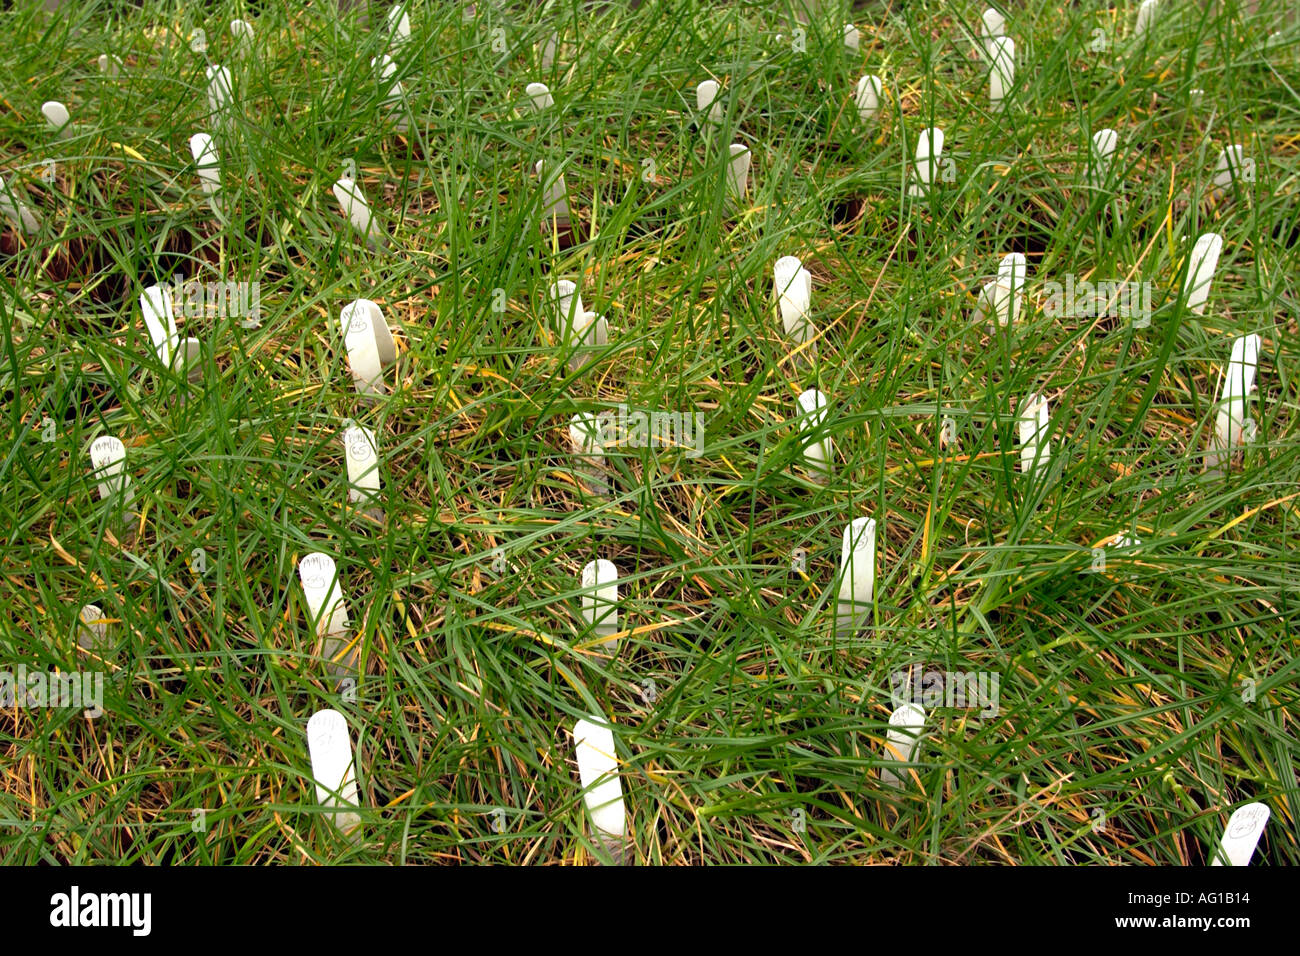 Nuovi tipi di erba essendo cresciuto a istituto di pascoli e di ricerca in campo ambientale IGER Aberystwyth West Wales UK Foto Stock